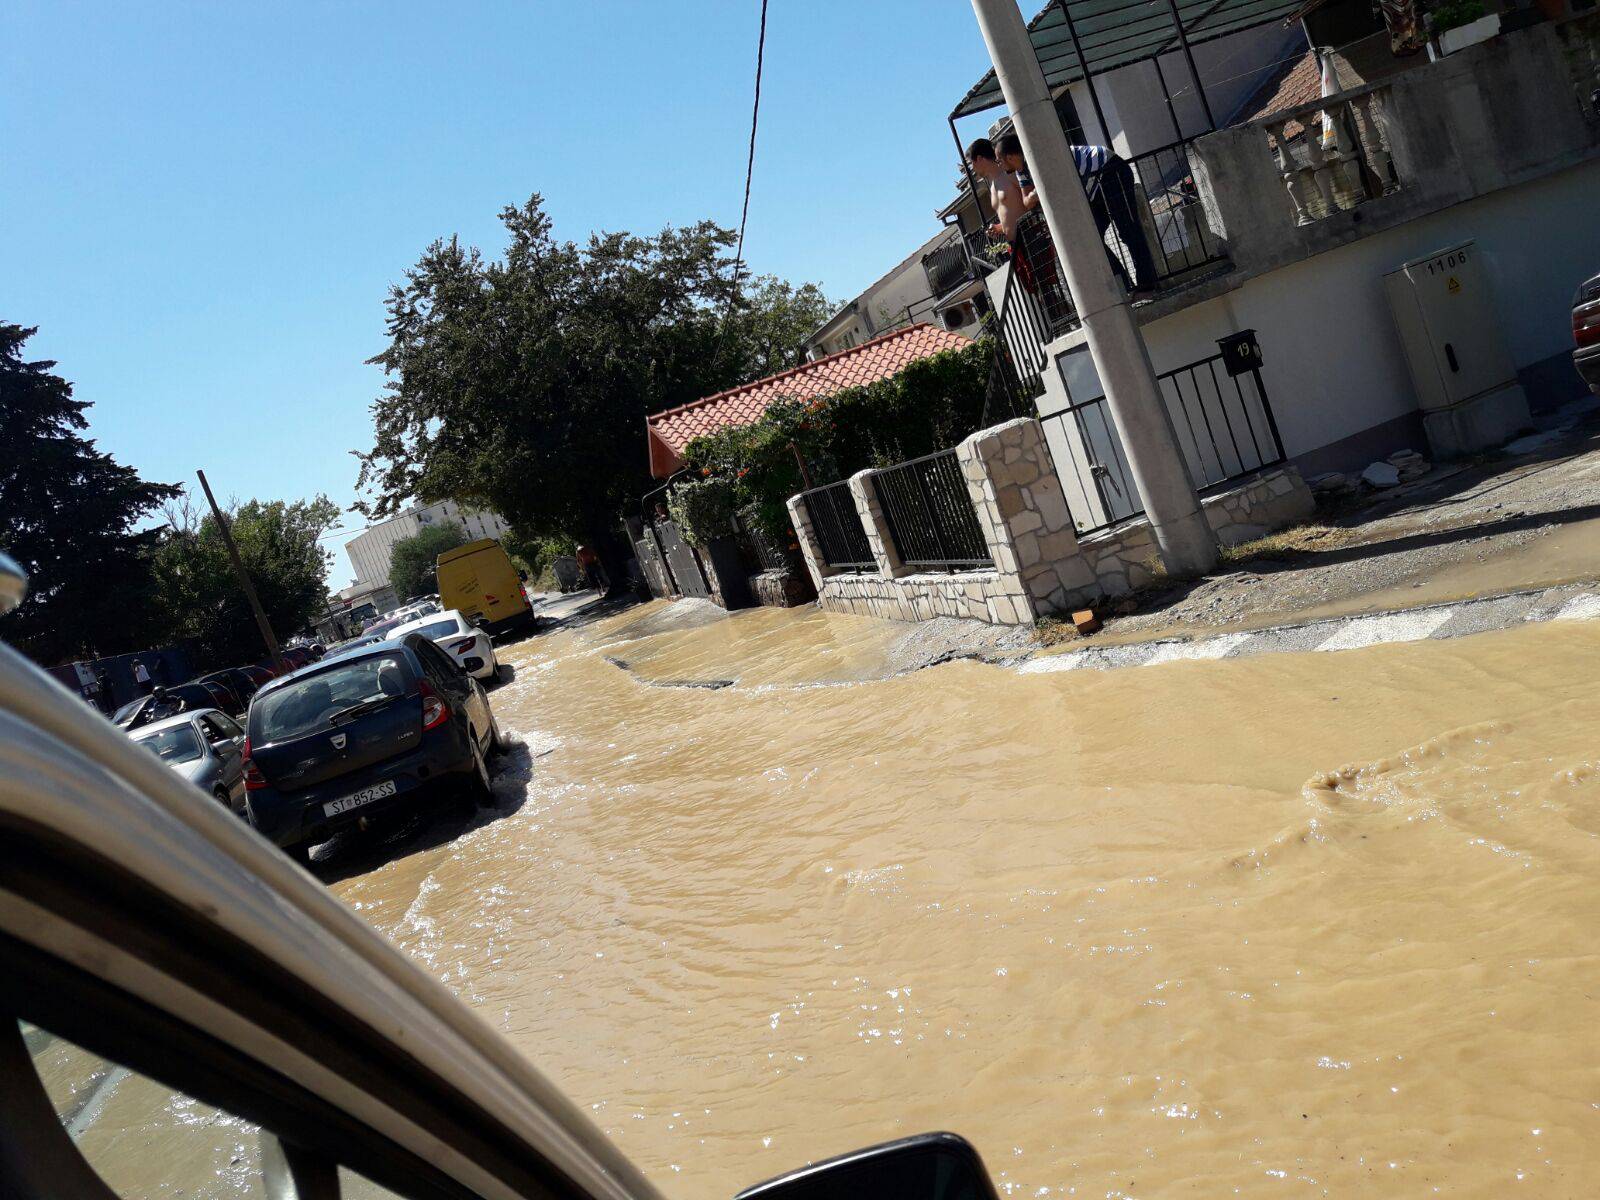 Pukla vodovodna cijev u Splitu: Ulica je pod vodom i kamenjem